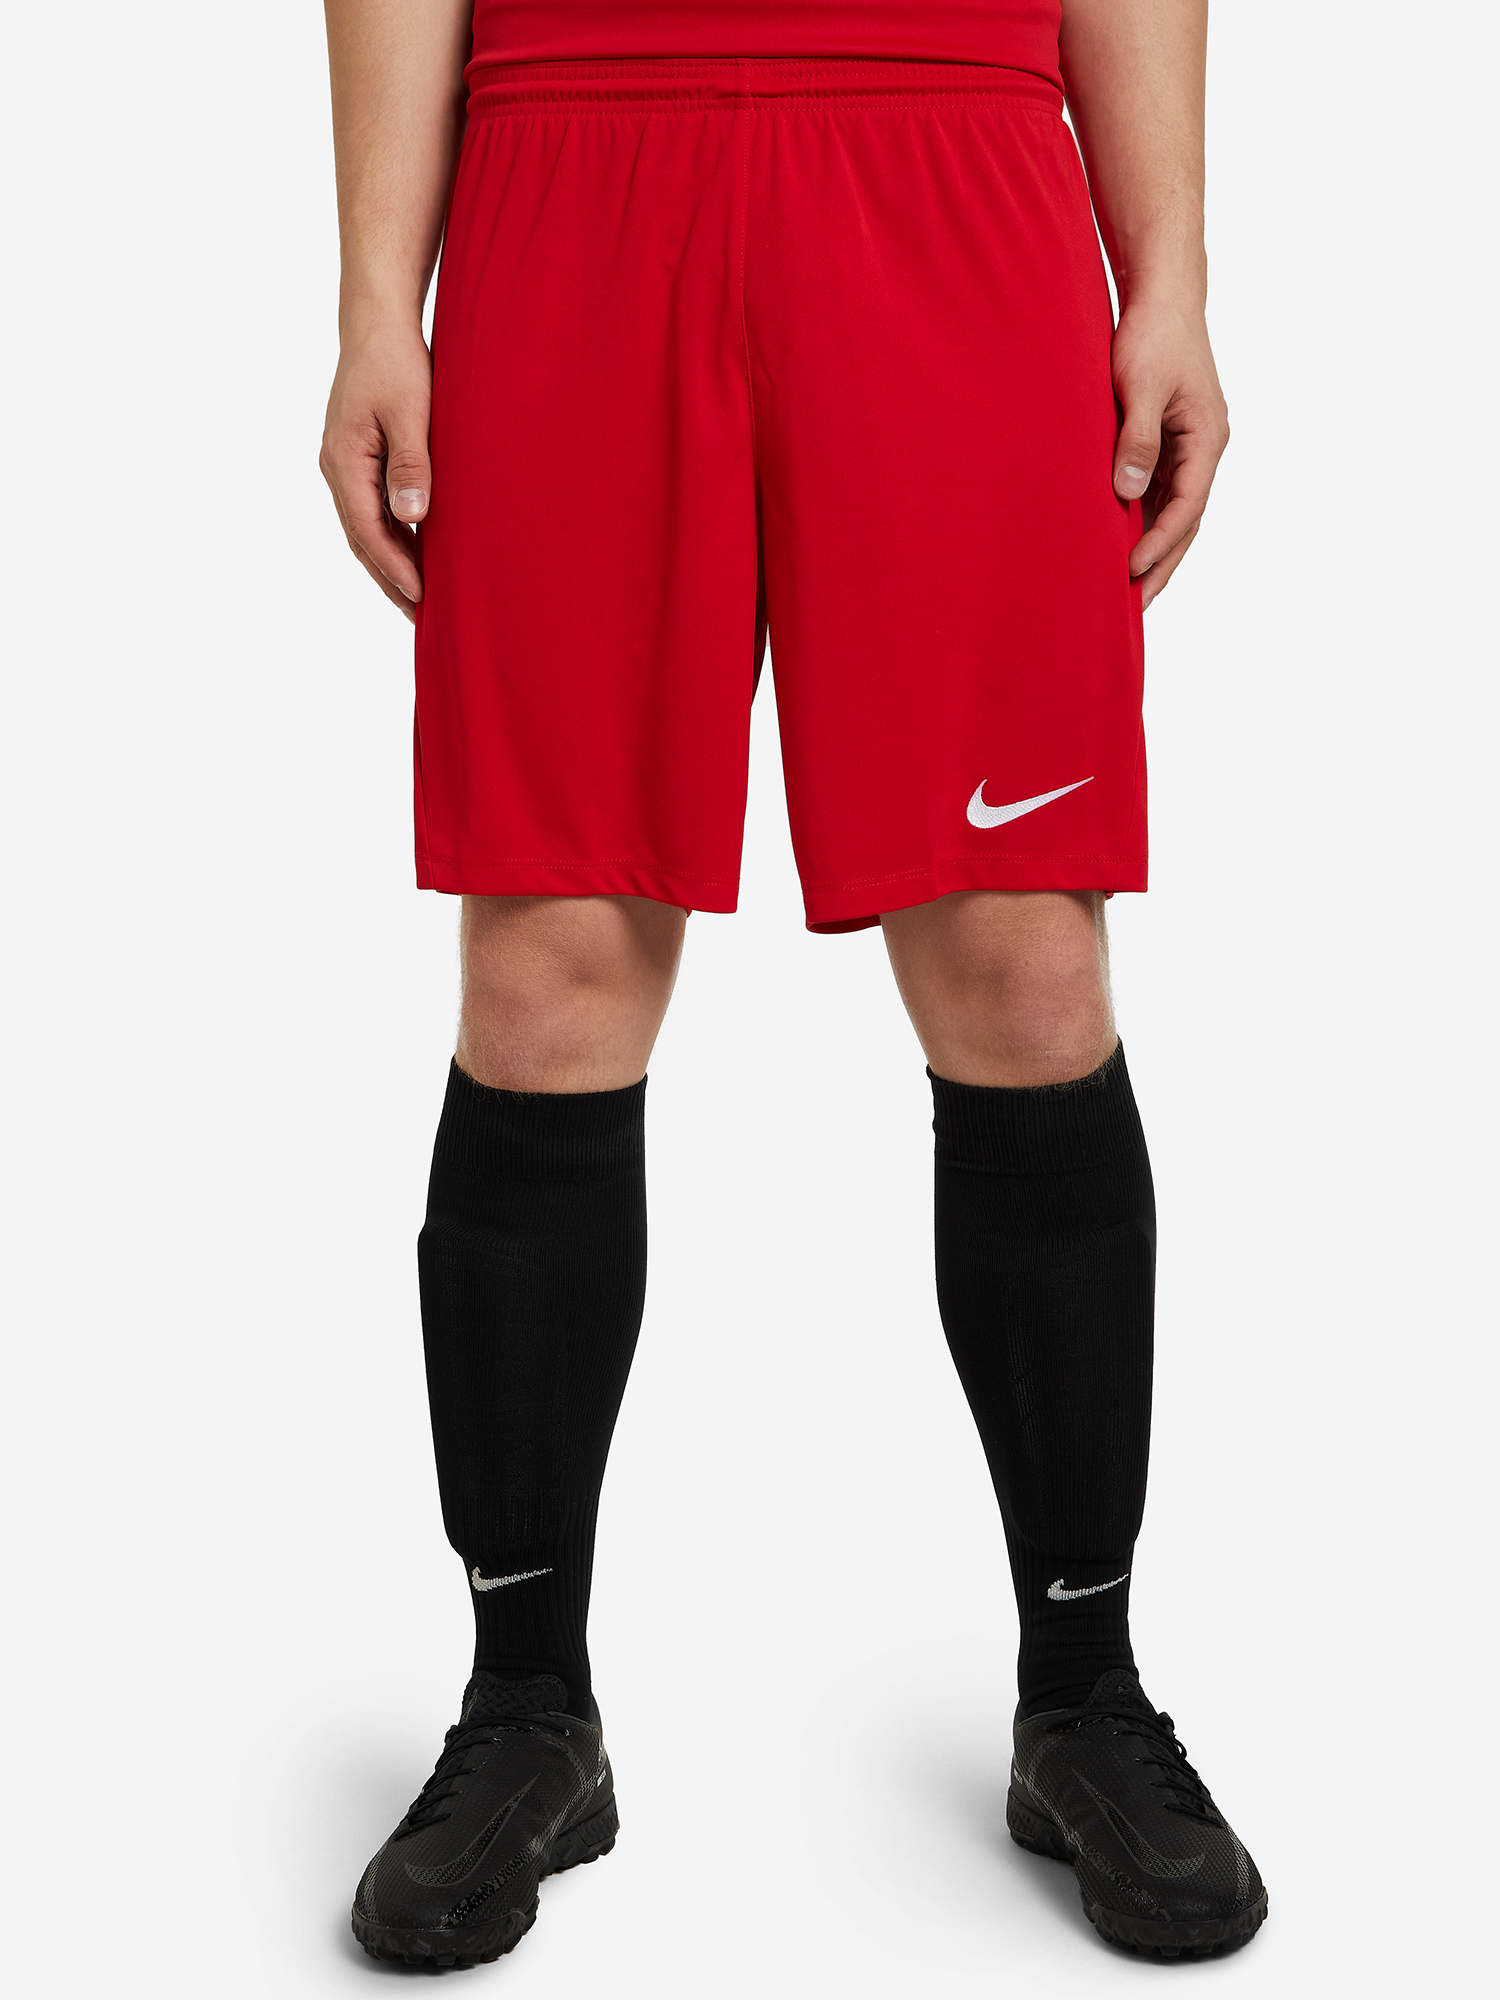 Шорты мужские Nike, Красный футболка для мальчиков nike dri fit park красный